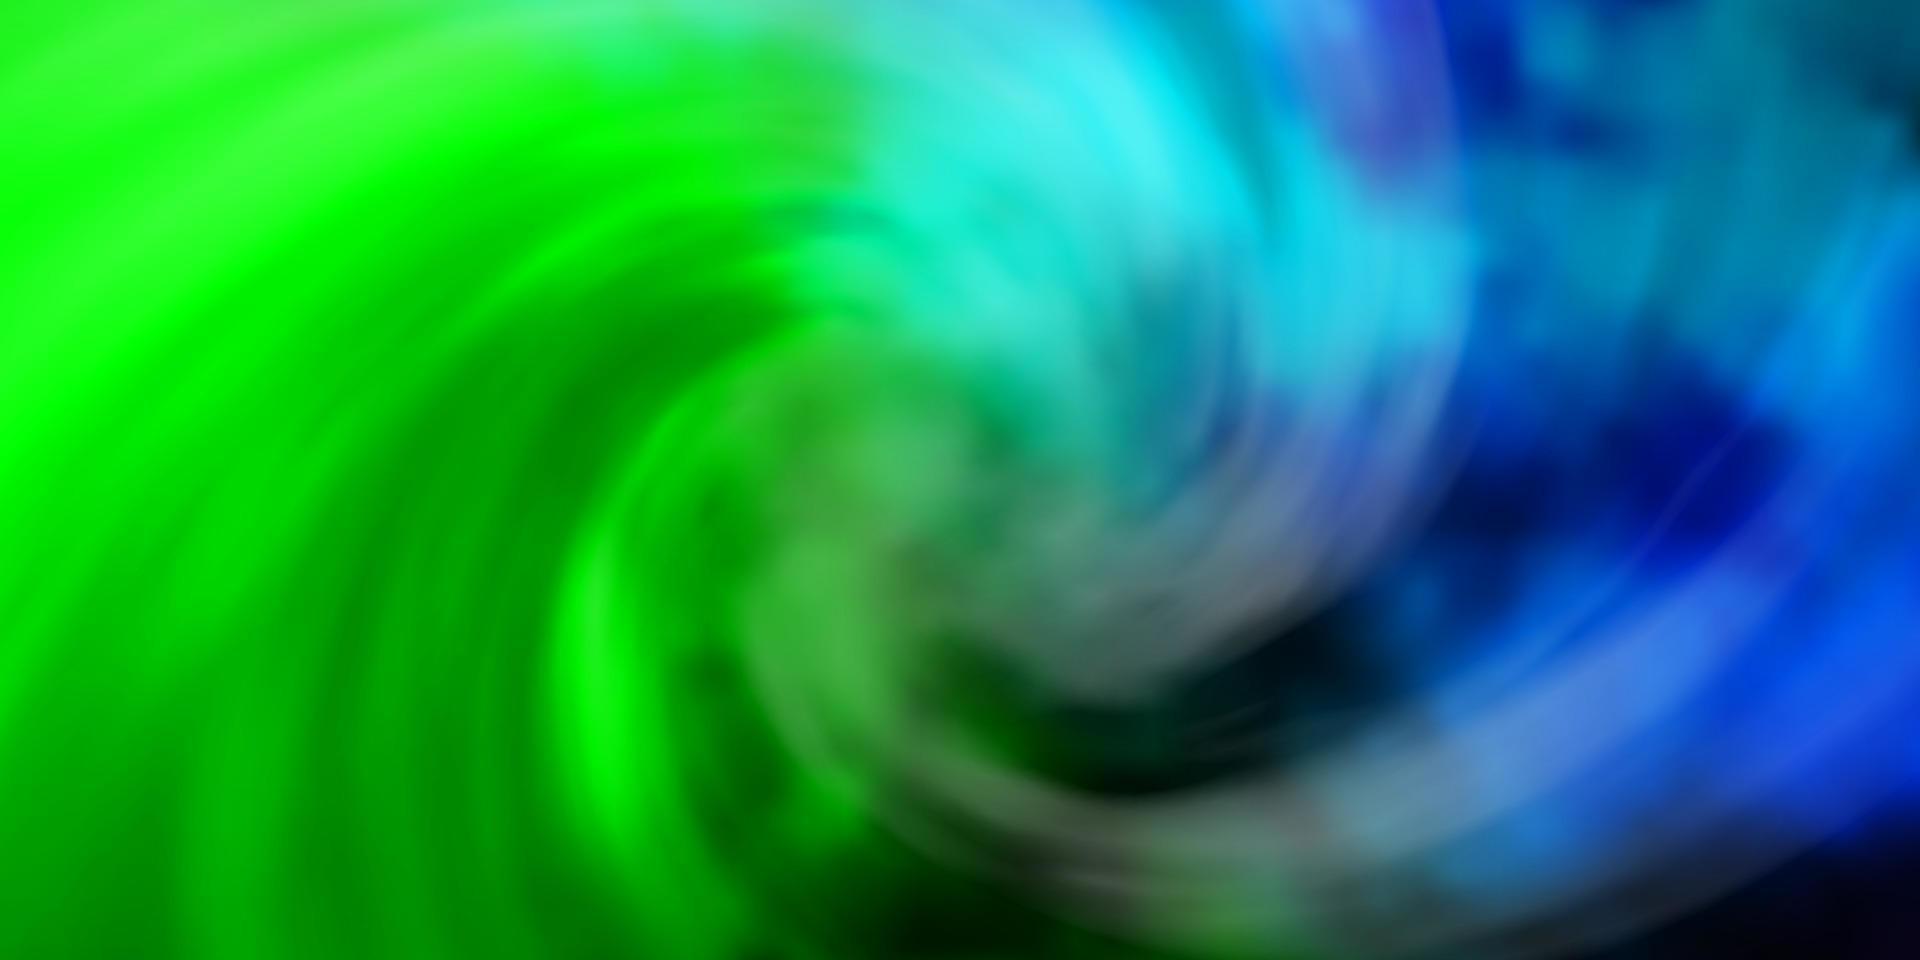 ljusblå, grön vektorbakgrund med moln. vektor